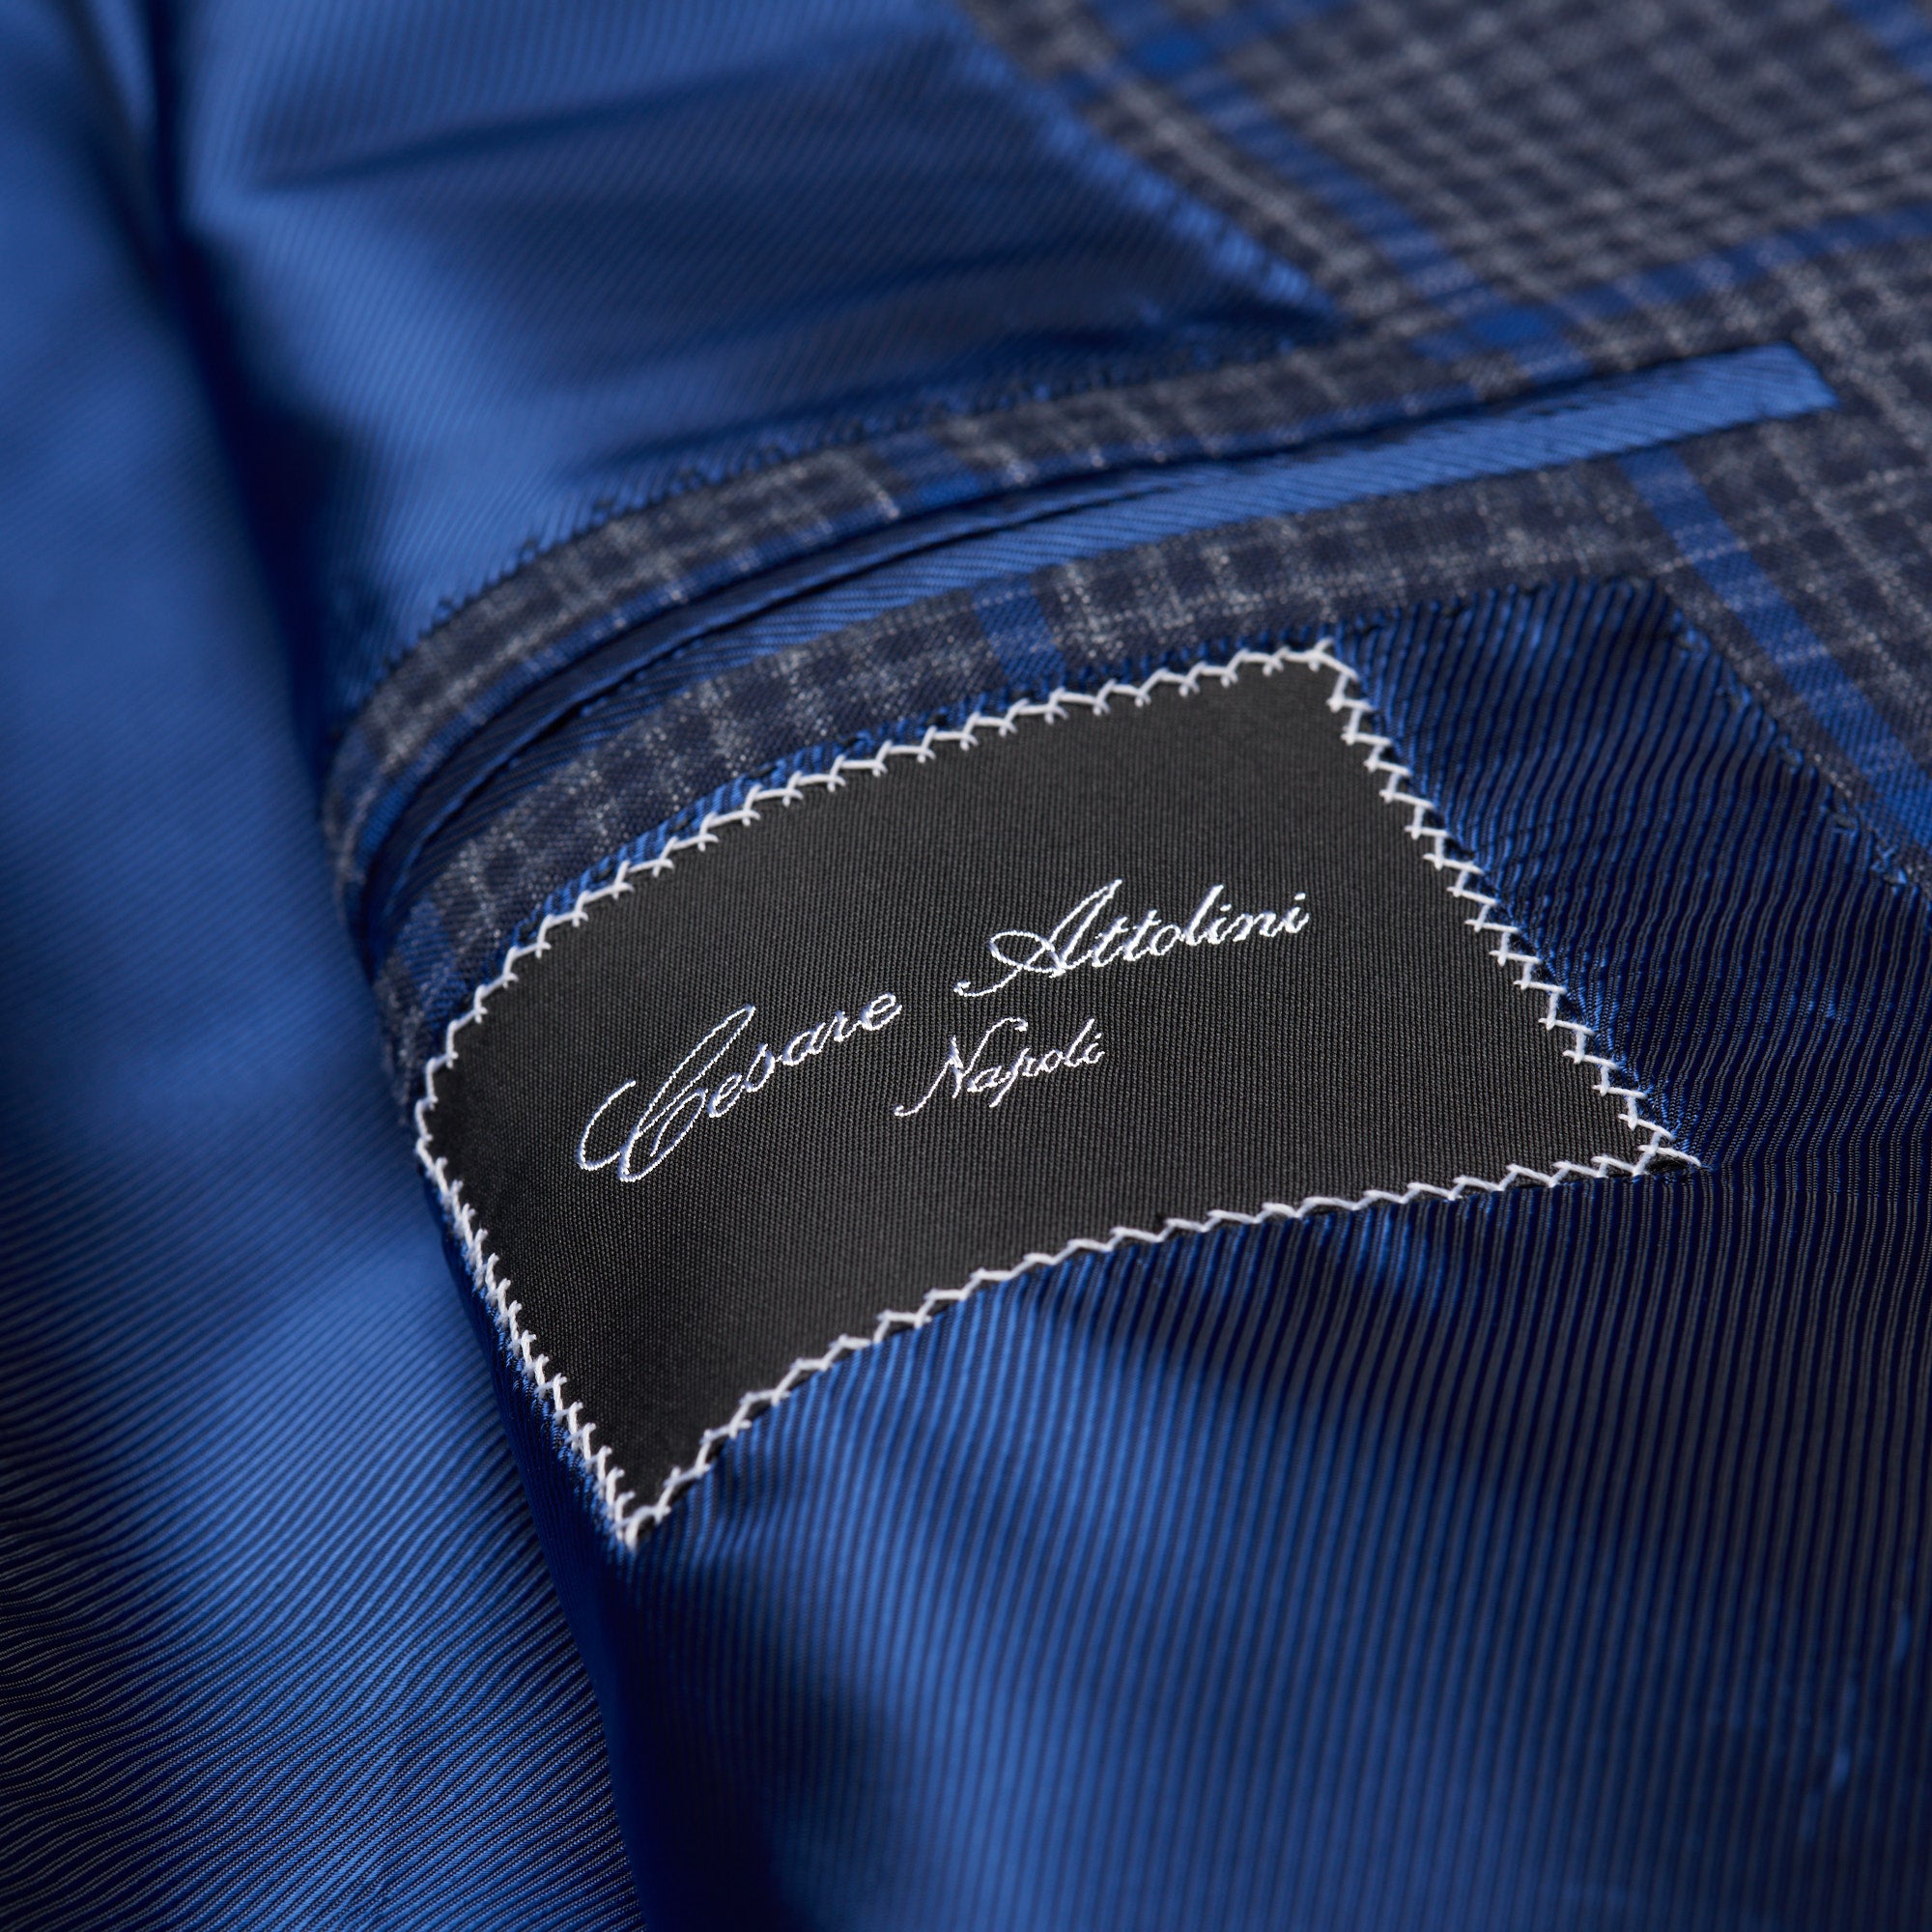 CESARE ATTOLINI Napoli Handmade Blue Plaid Wool-Silk-Linen Suit EU 48 NEW US 38 CESARE ATTOLINI